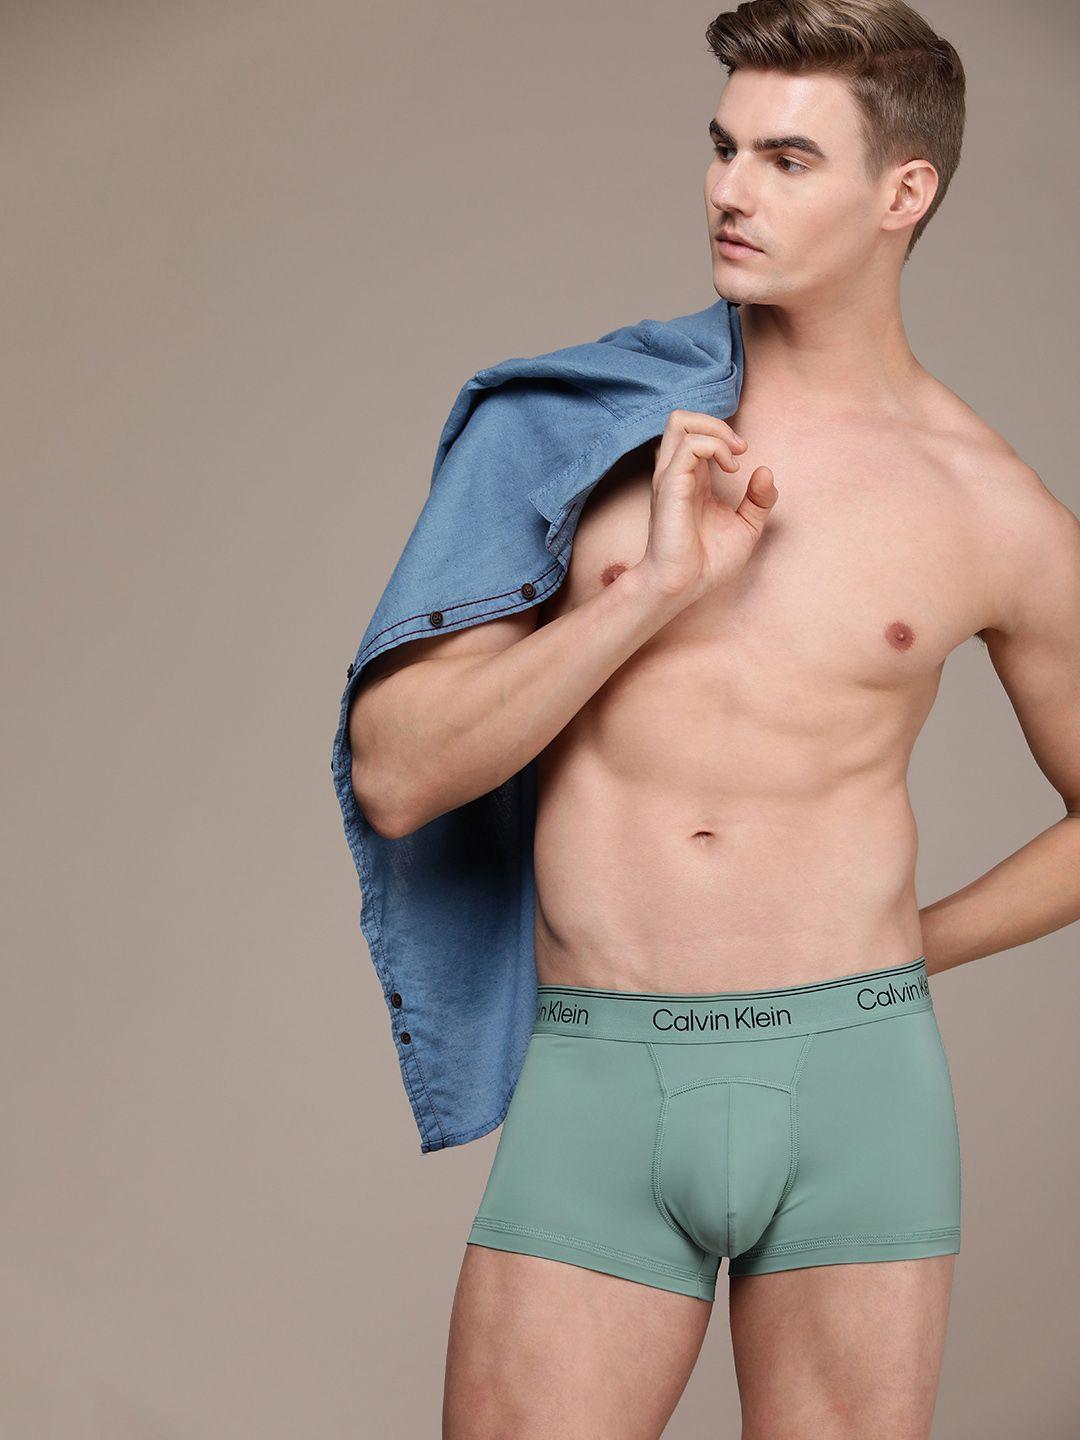 calvin-klein-underwear-men-low-rise-trunk-nb3235cax